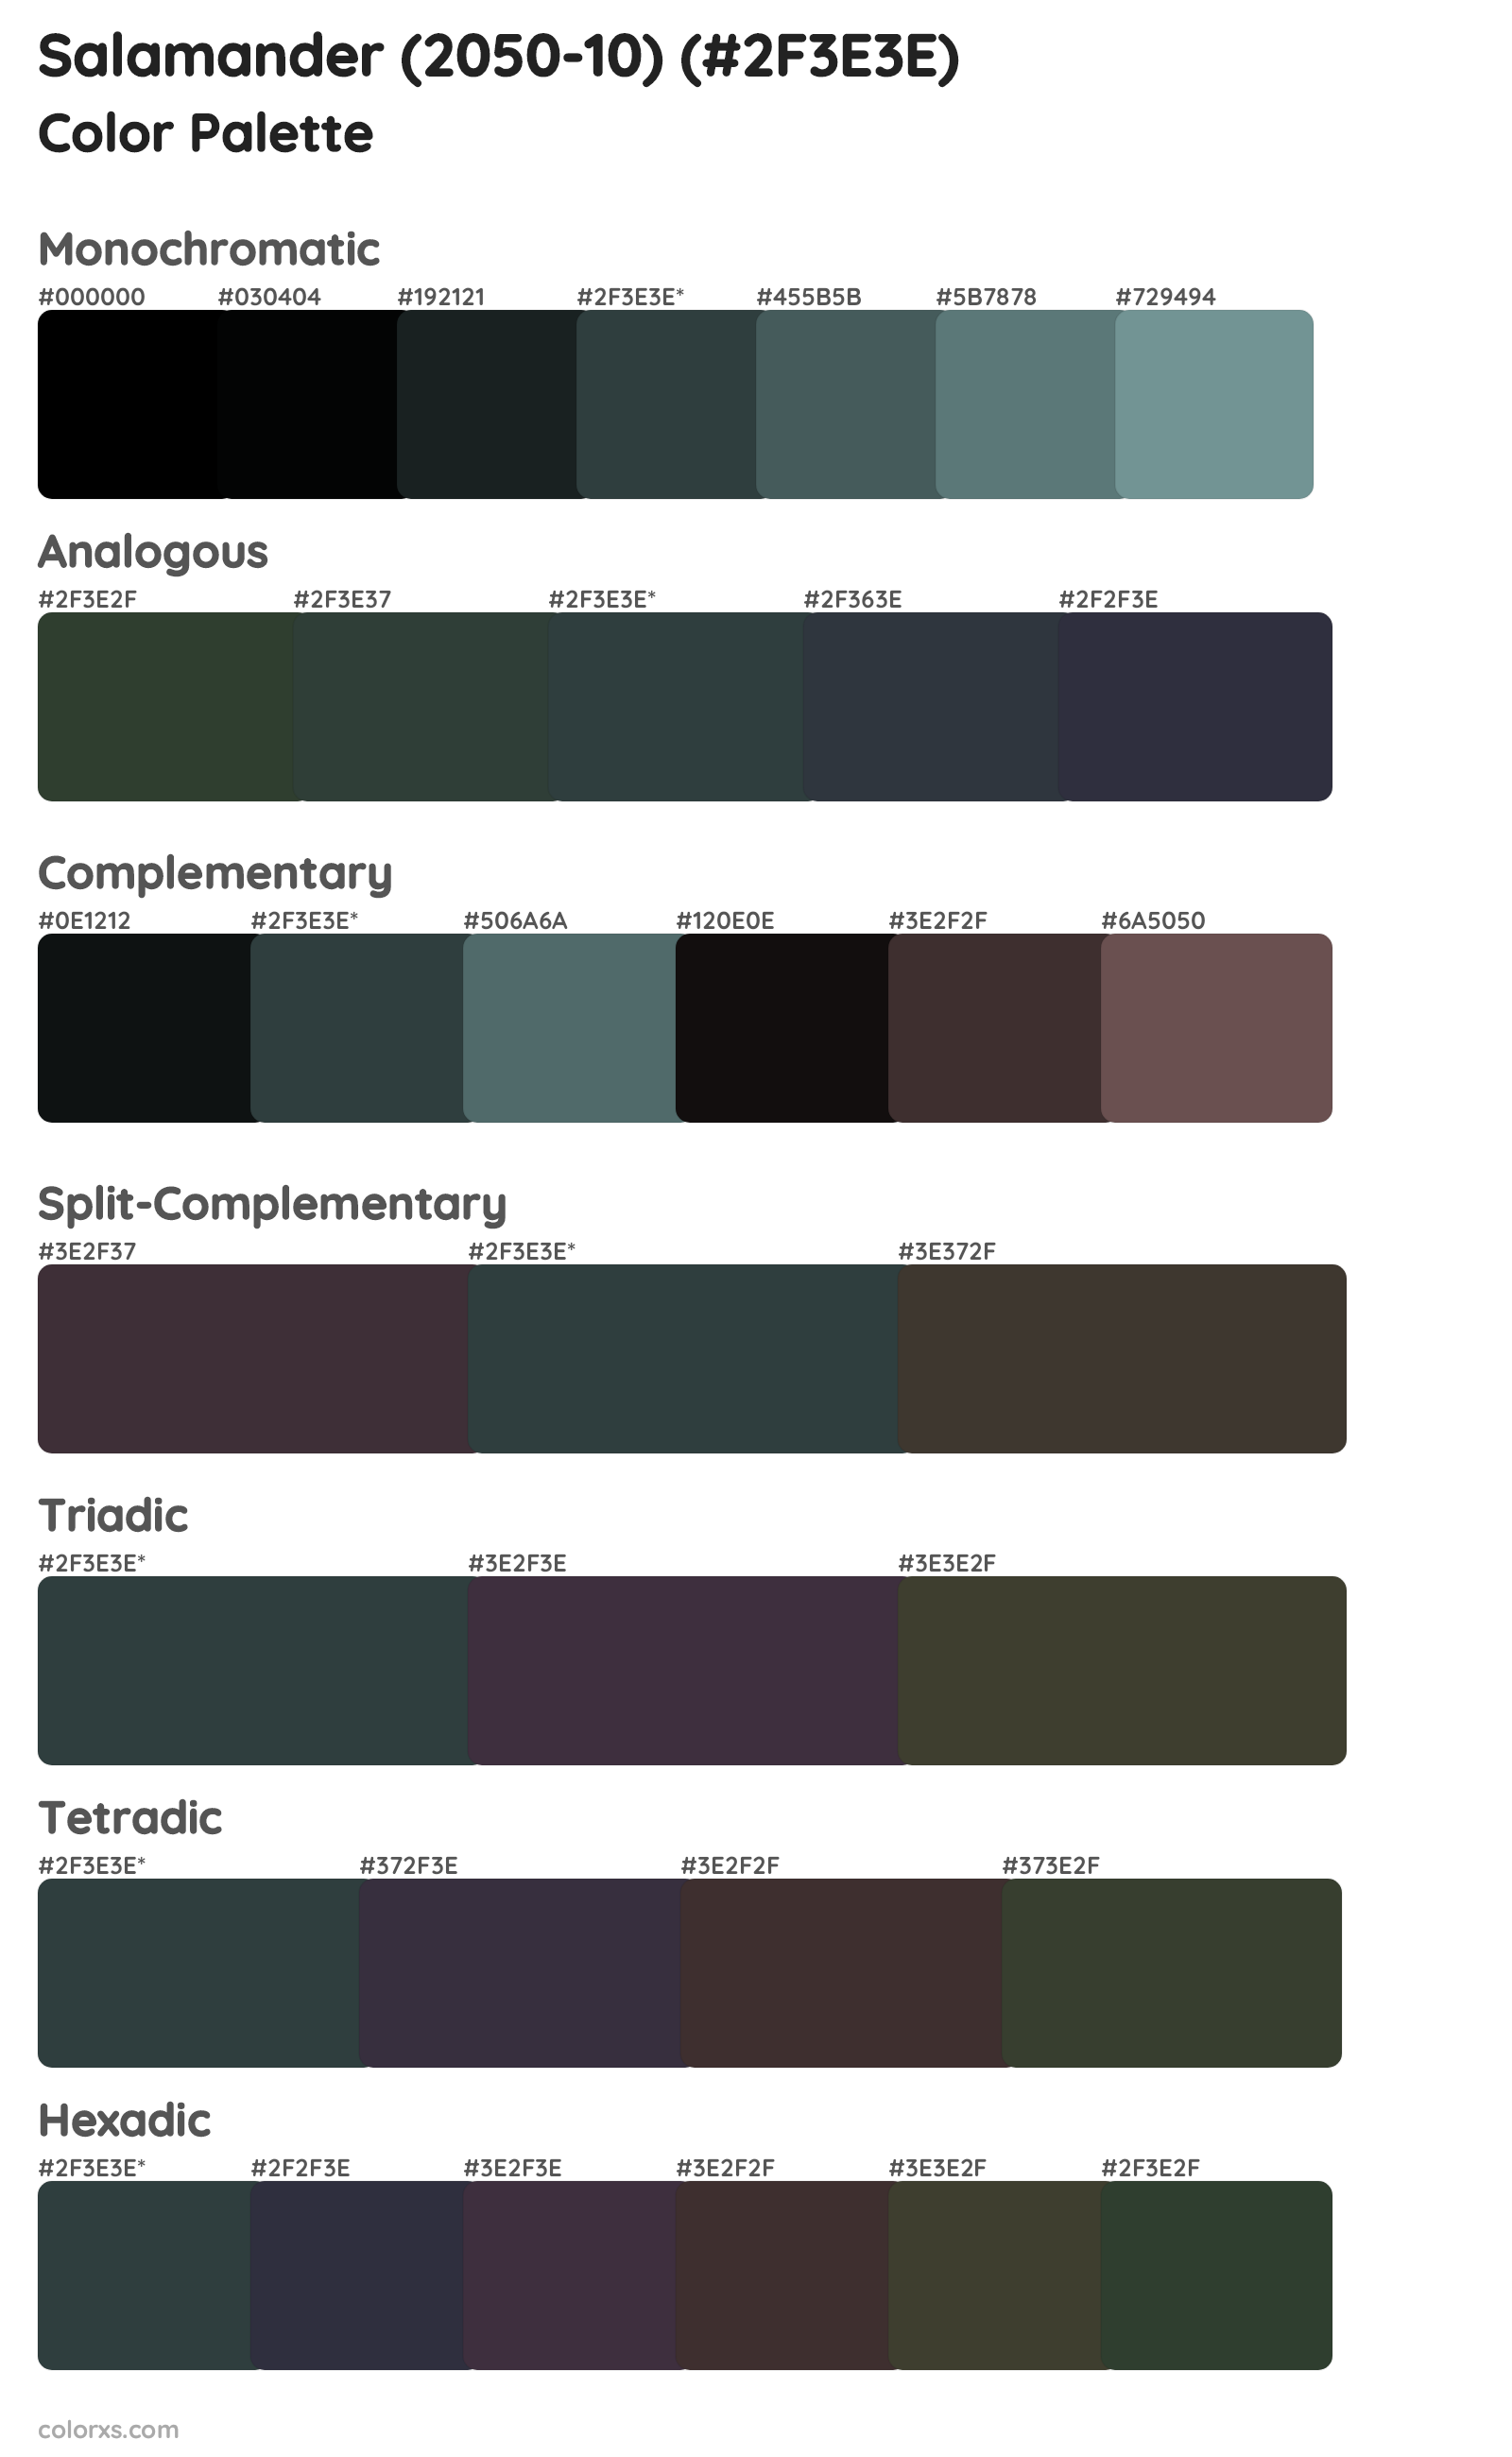 Salamander (2050-10) Color Scheme Palettes